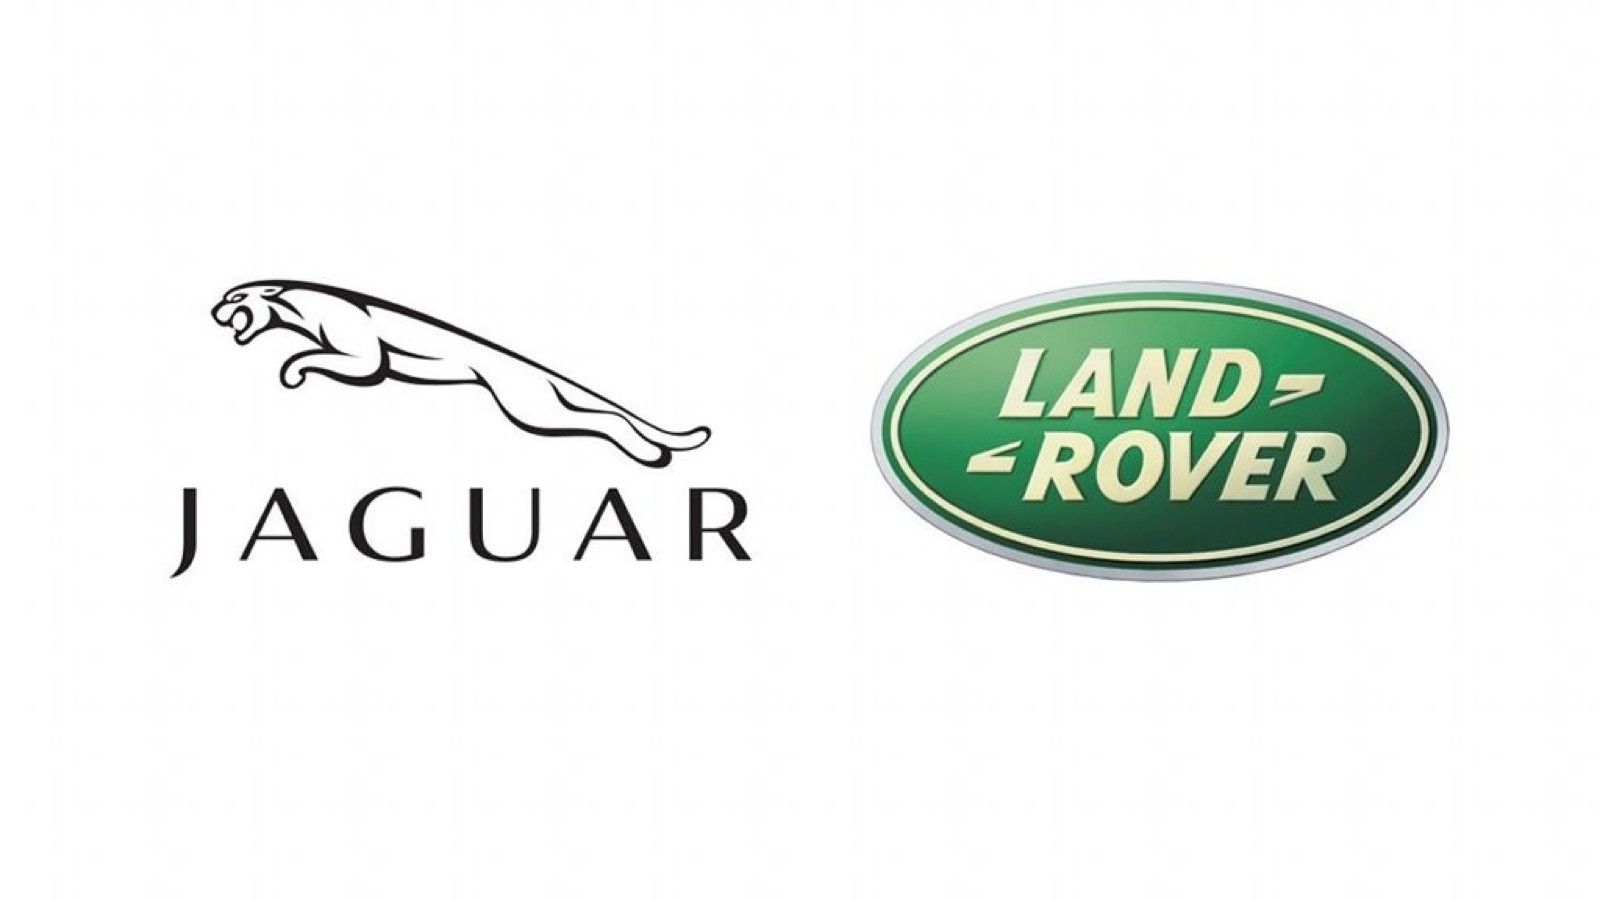 Jaguar land rover Logos